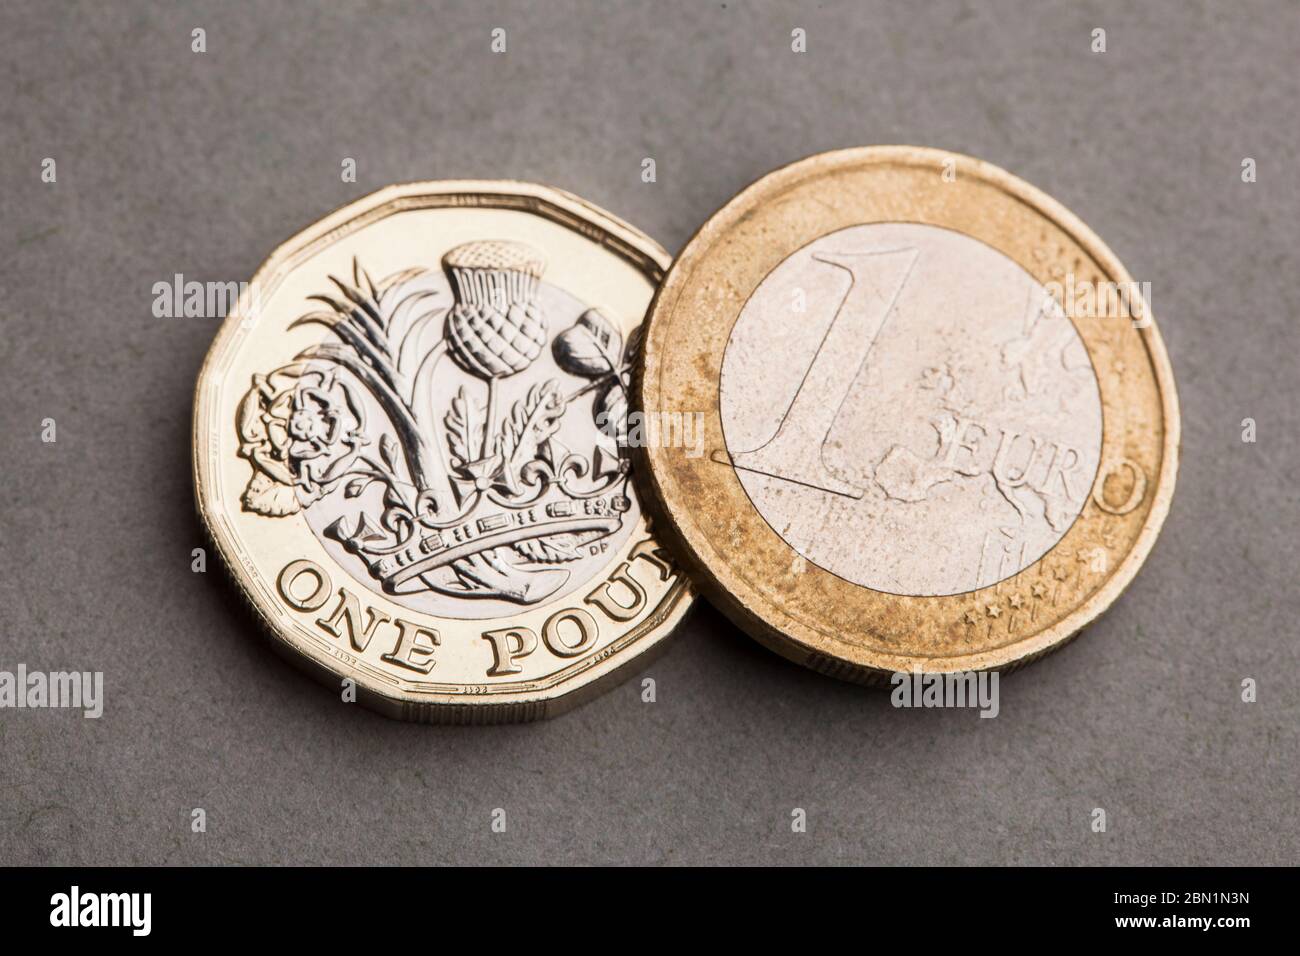 Pound euro coin immagini e fotografie stock ad alta risoluzione - Alamy